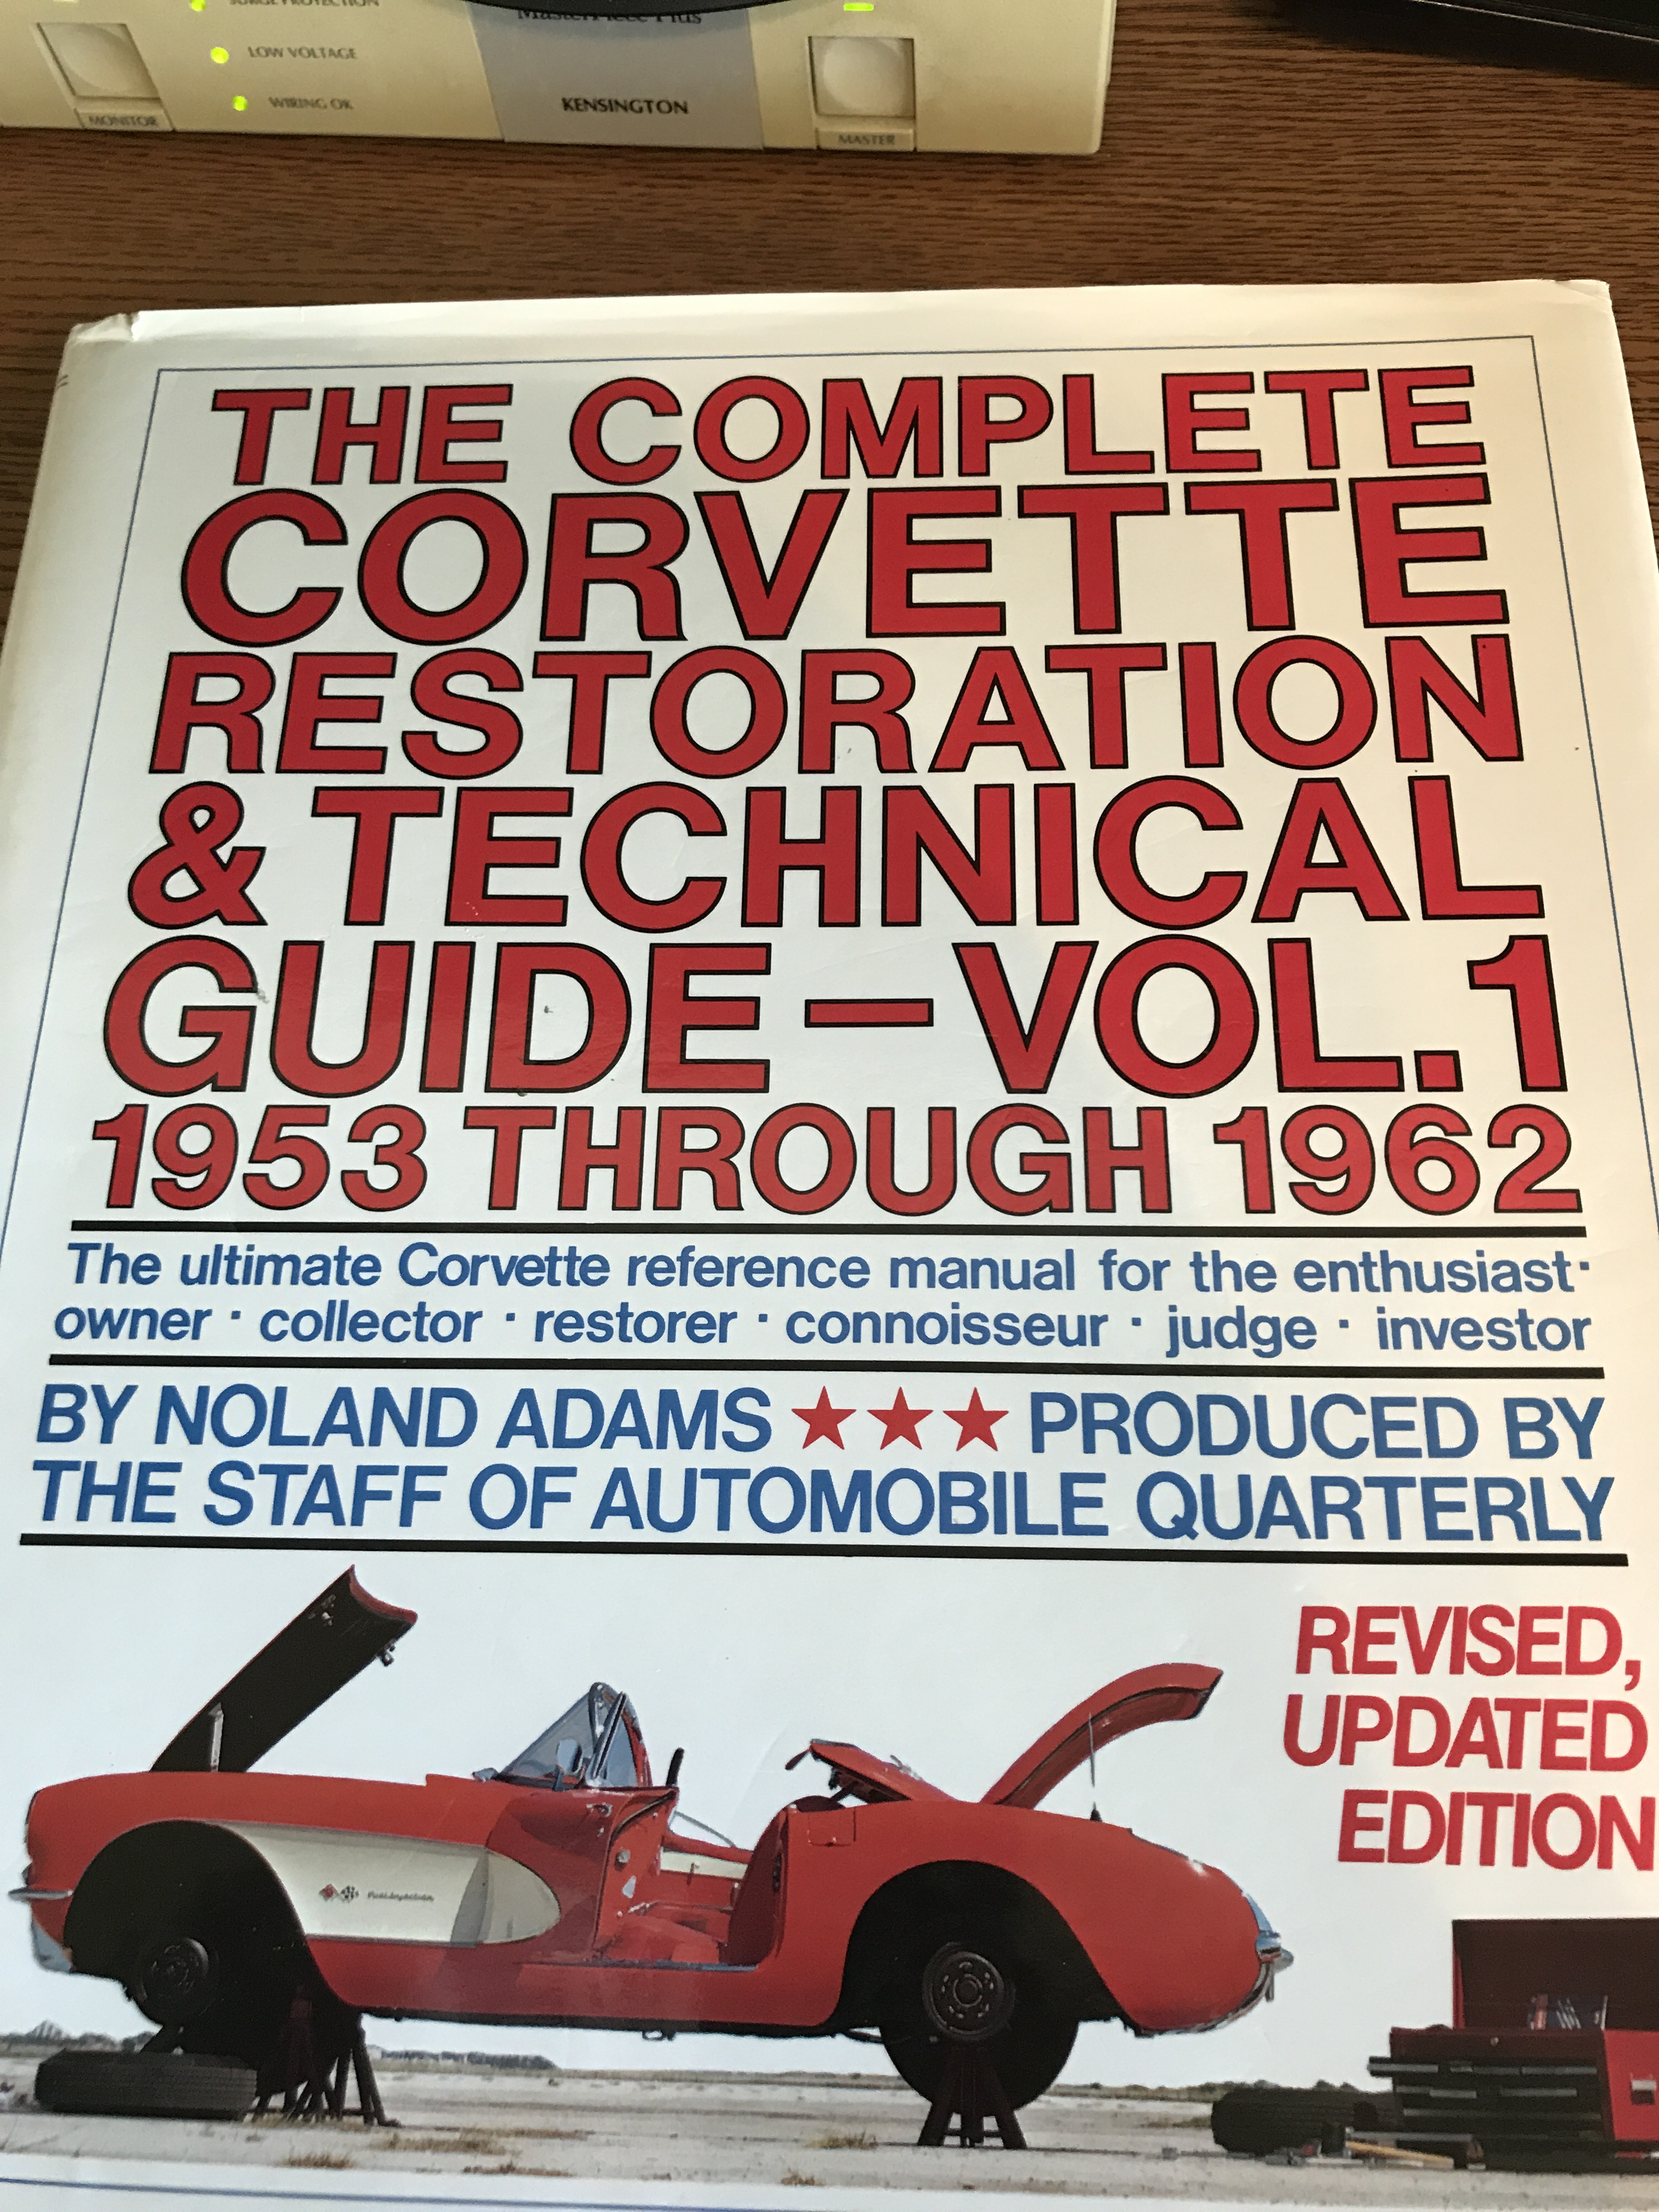 Corvette Restoration Guide.jpg